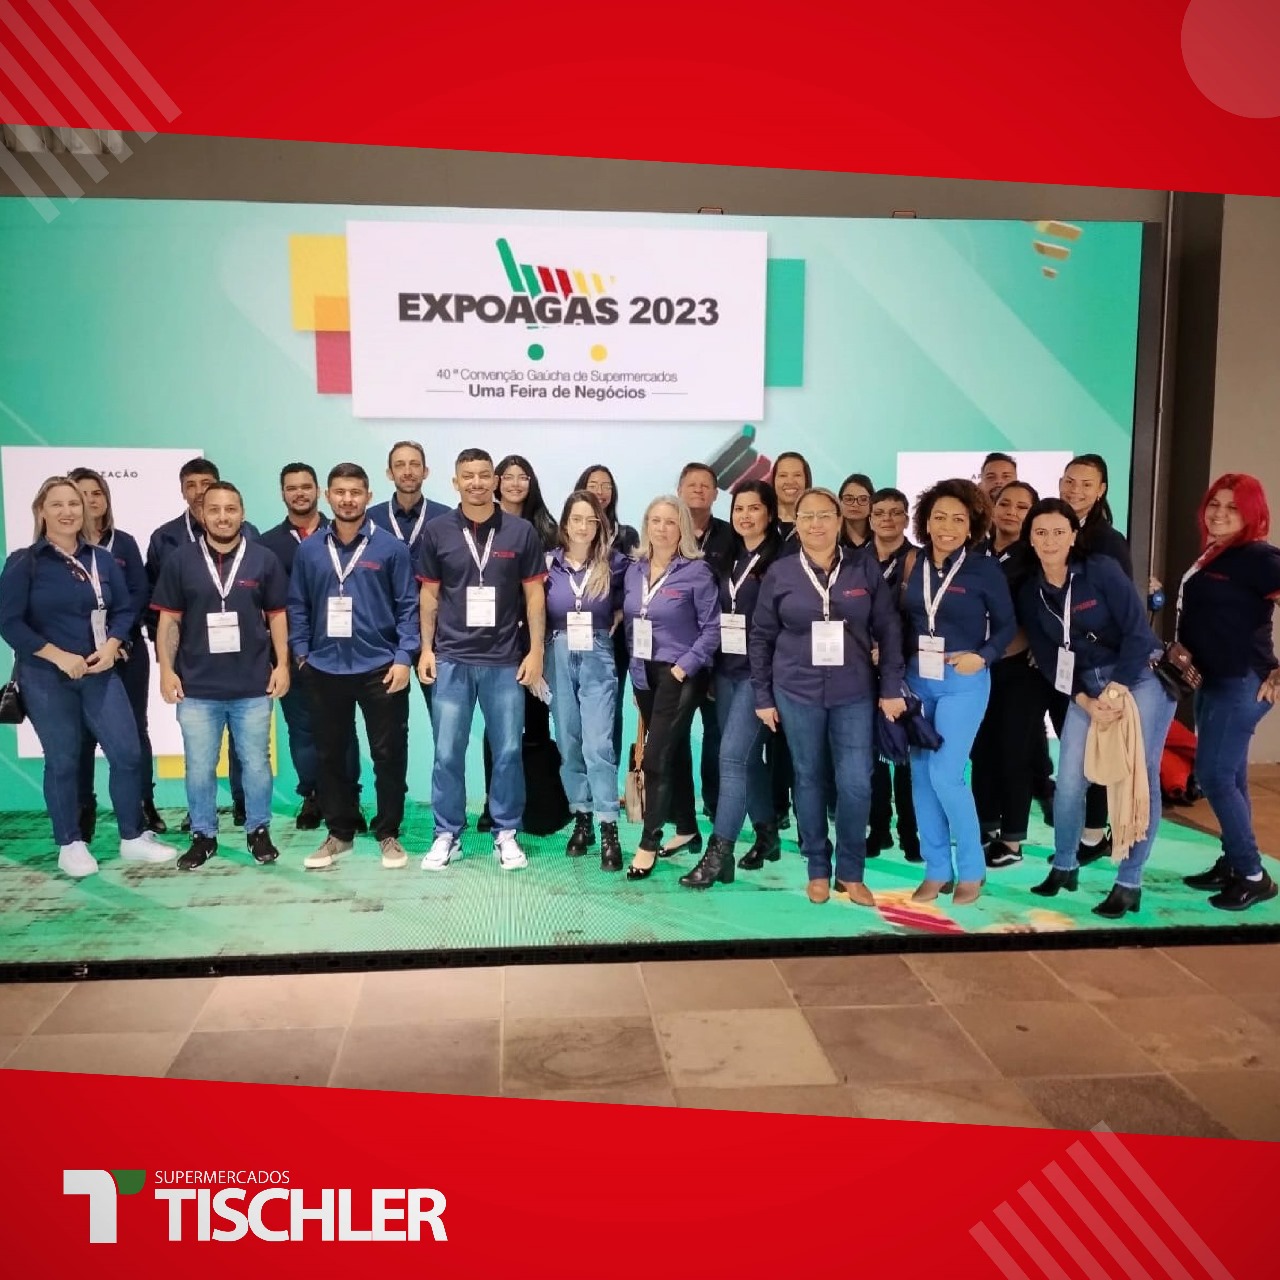 Expoagas 2023: três dias de intensa programação e experiências para equipes de diferentes setores da Companhia Tischler 